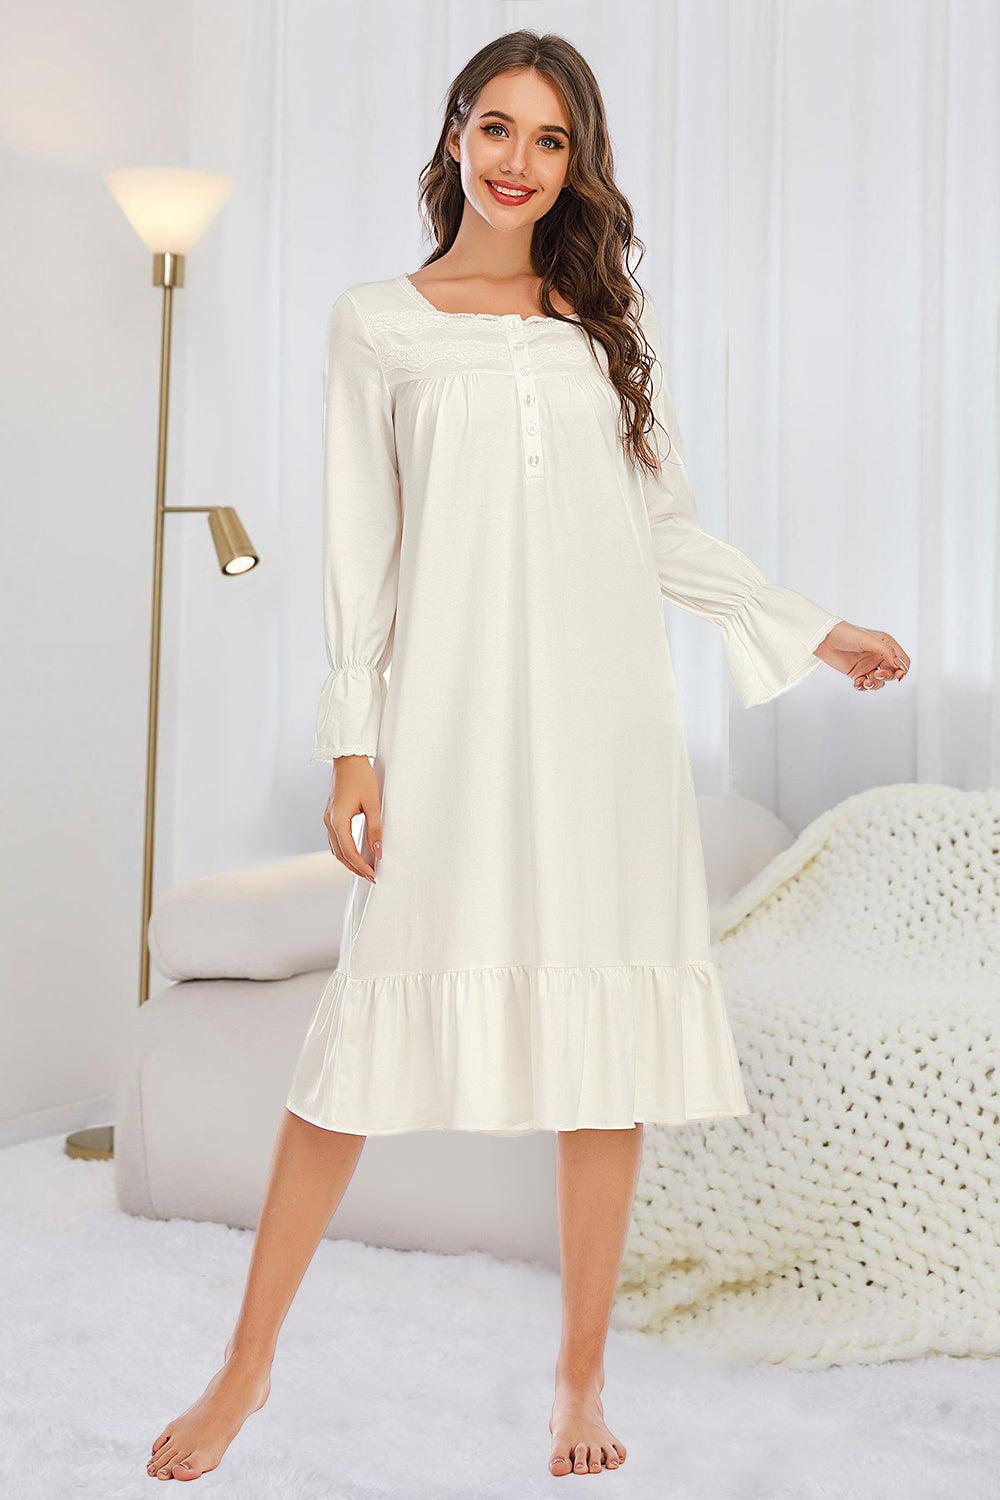 Flounce Sleeve Ruffle Hem Nightgown Women's Loungewear